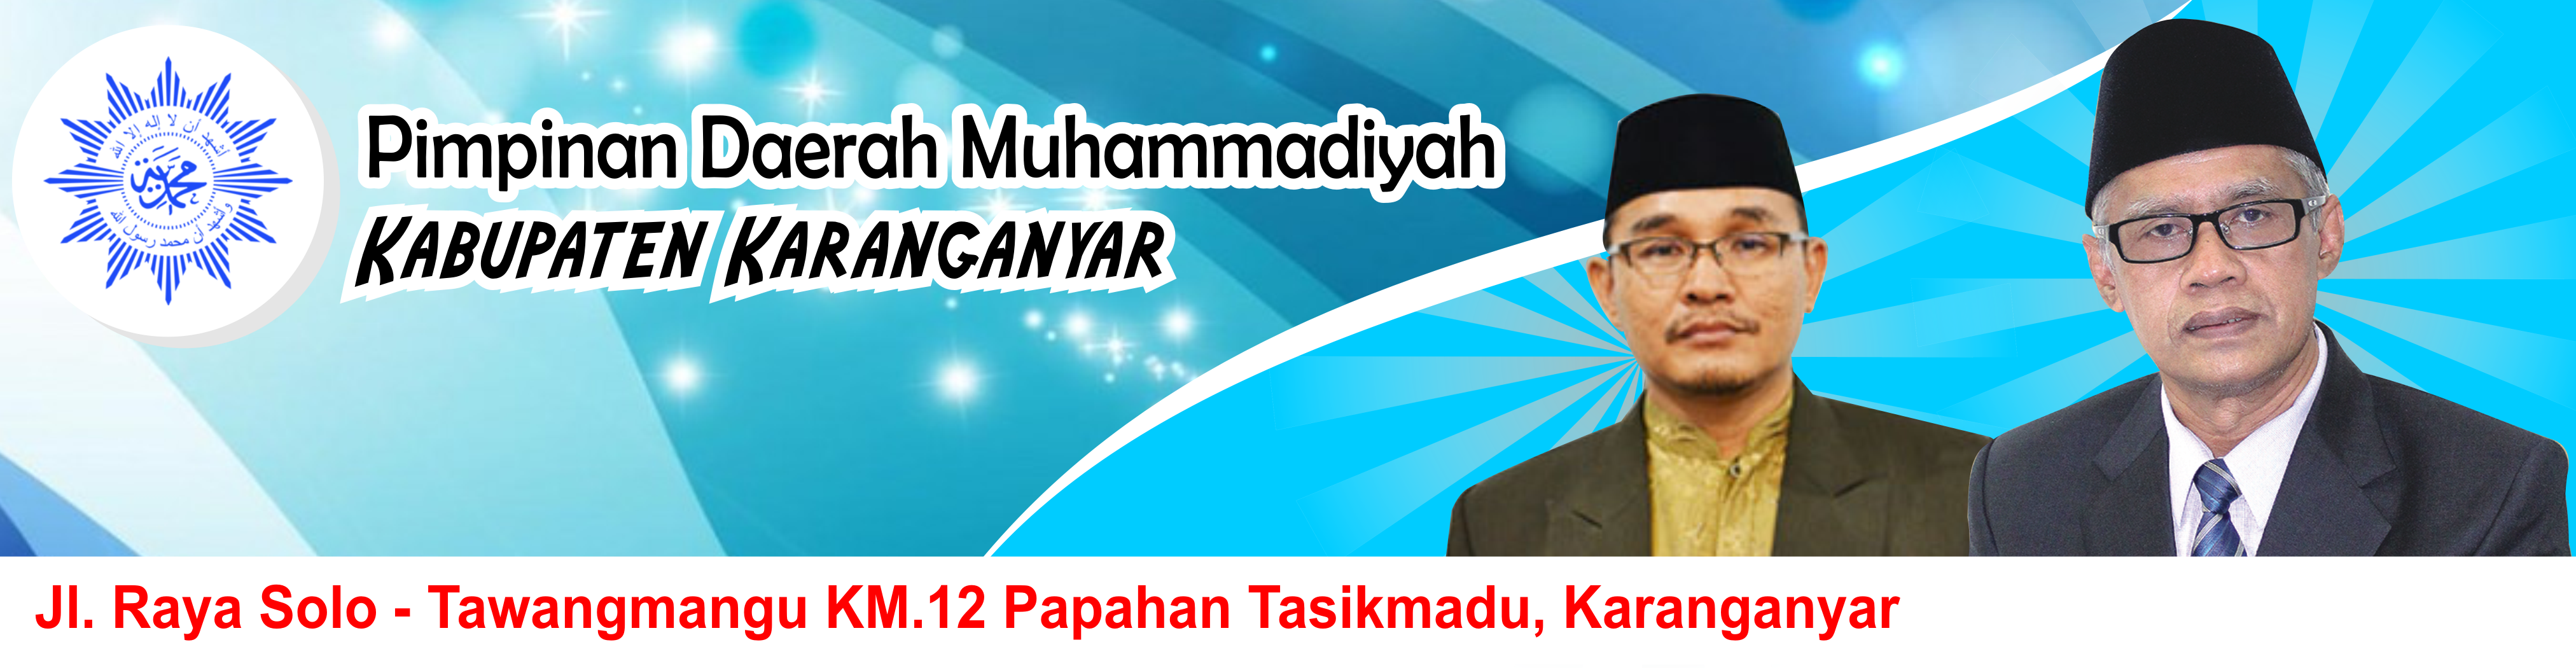 Majelis Ekonomi dan Kewirausahaan Pimpinan Daerah Muhammadiyah Kabupaten Karanganyar